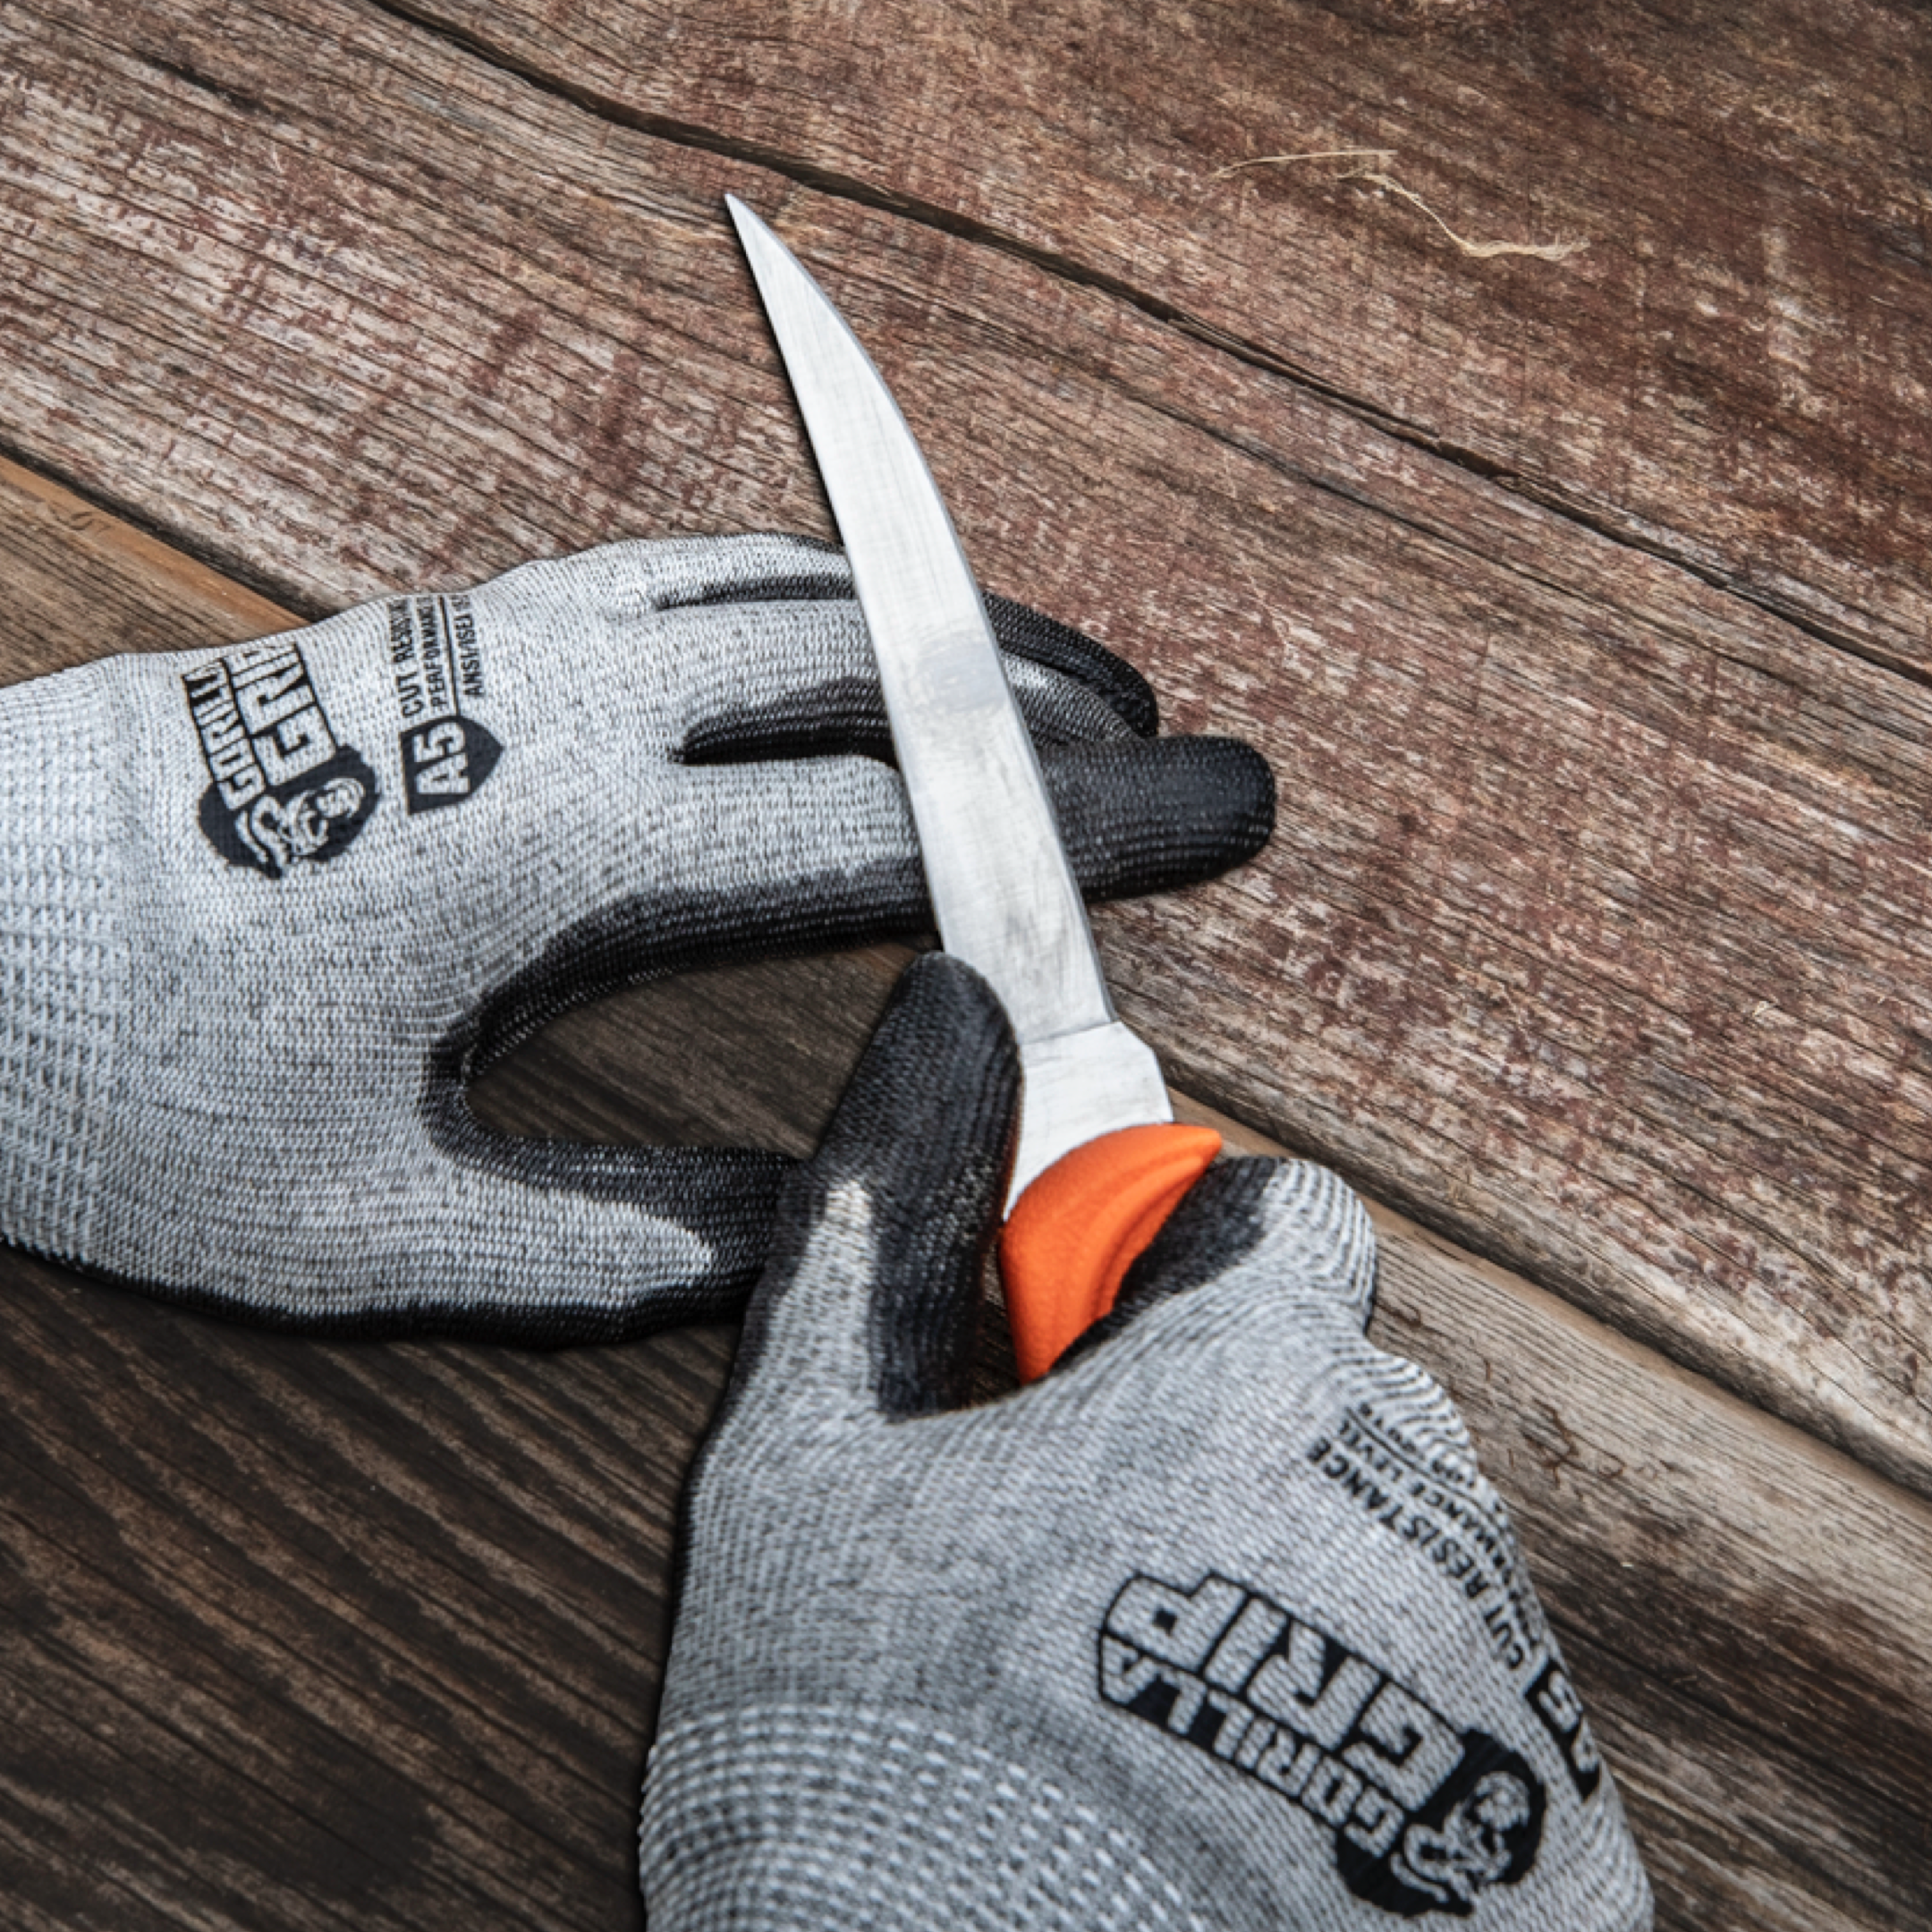 Gorilla Flex Cut 5 Microfoam Cut Resistant Gloves ⋆ PPE-ONLINE